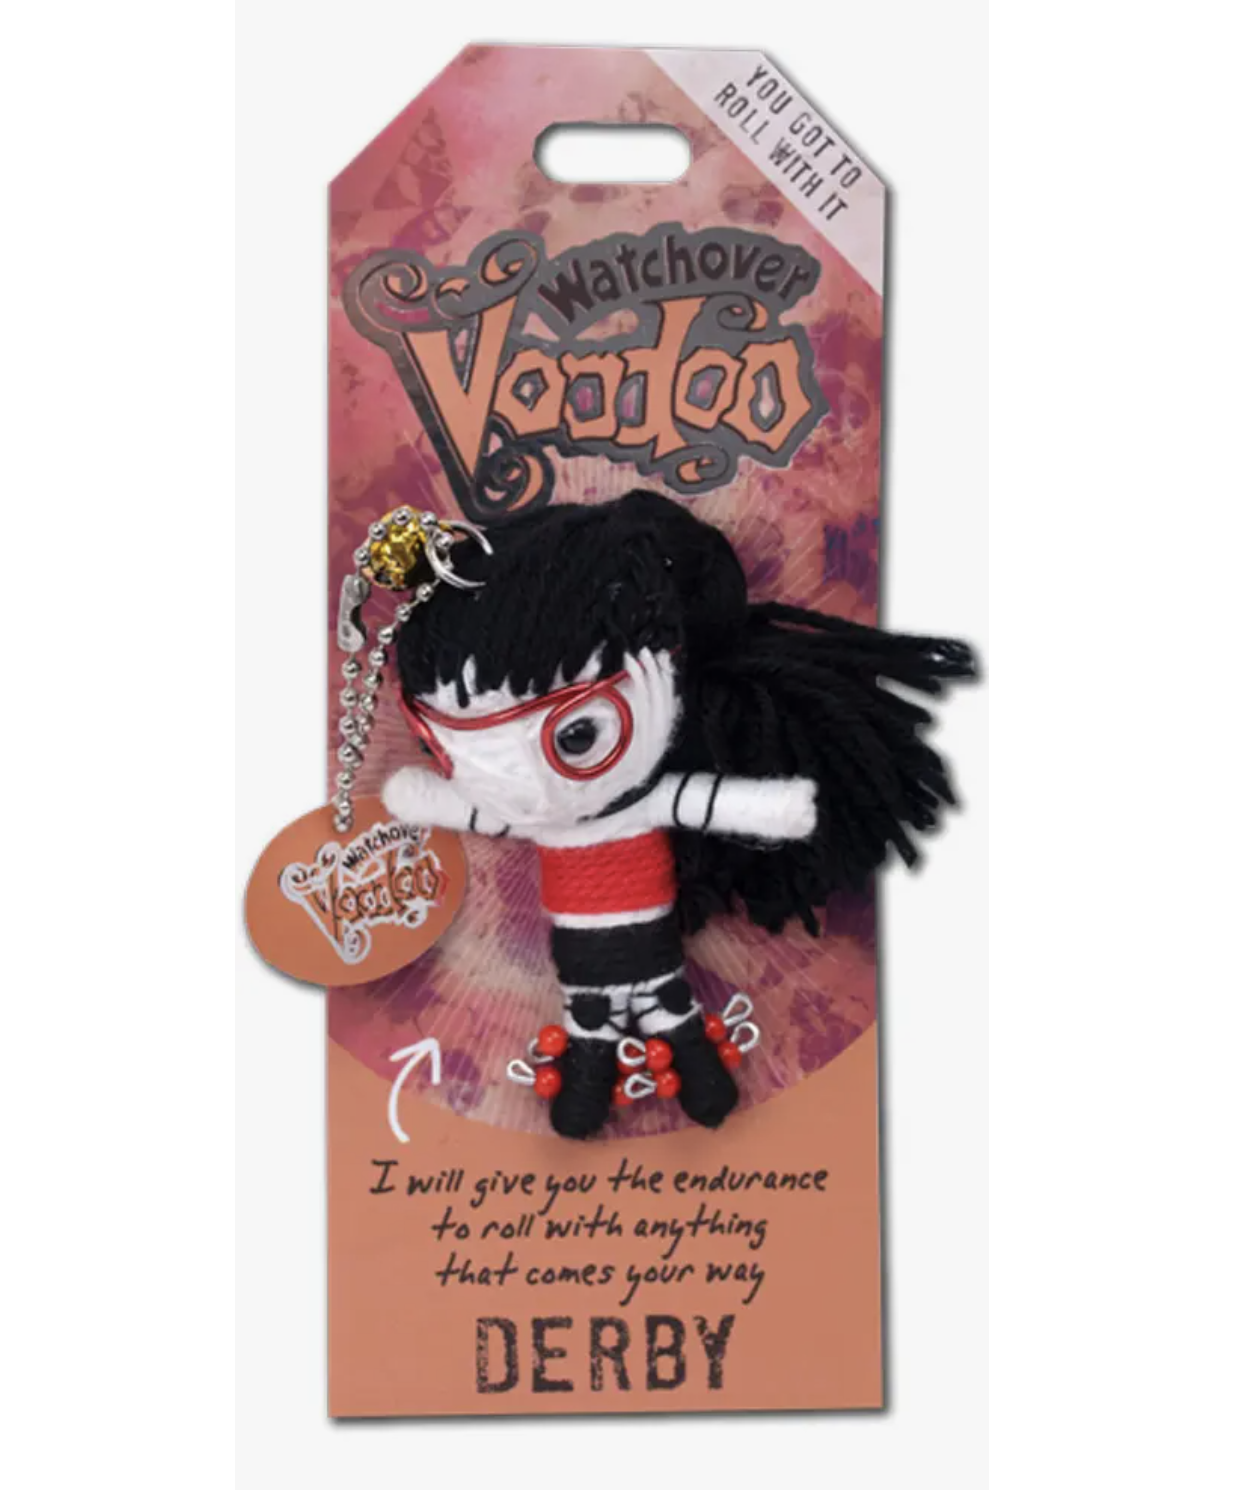 Derby Voodoo Doll